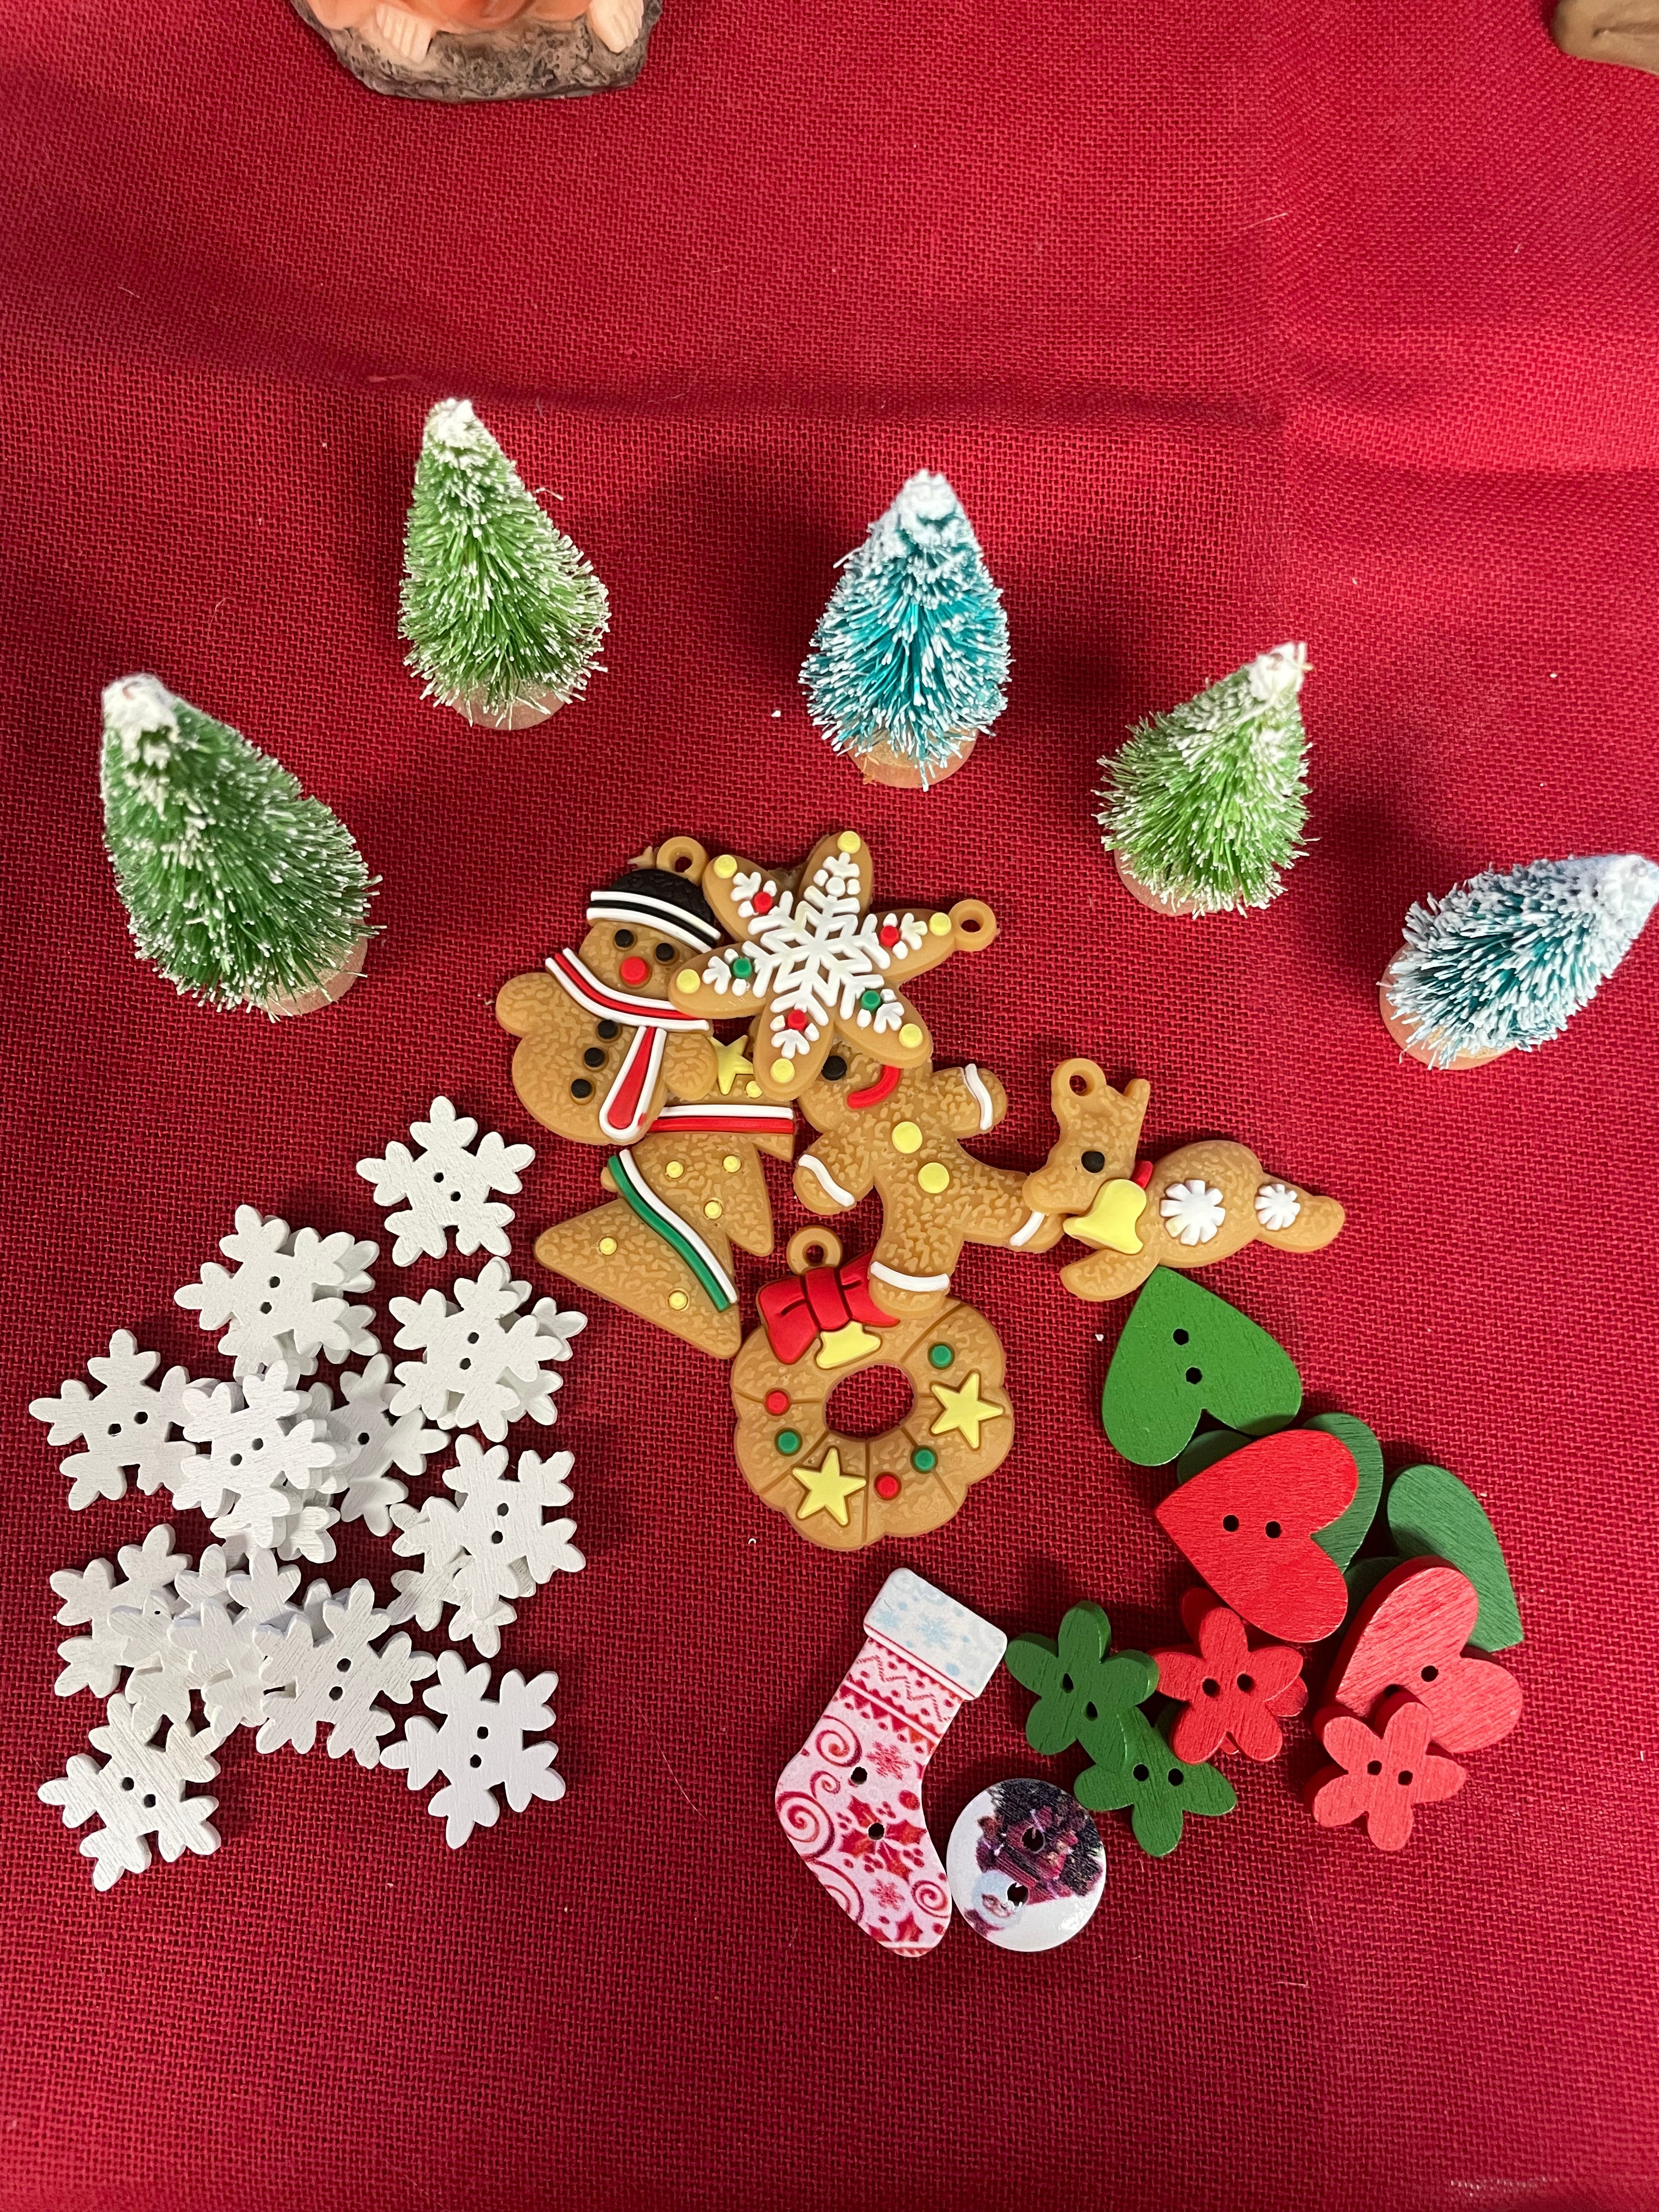 Christmas themed sensory play items